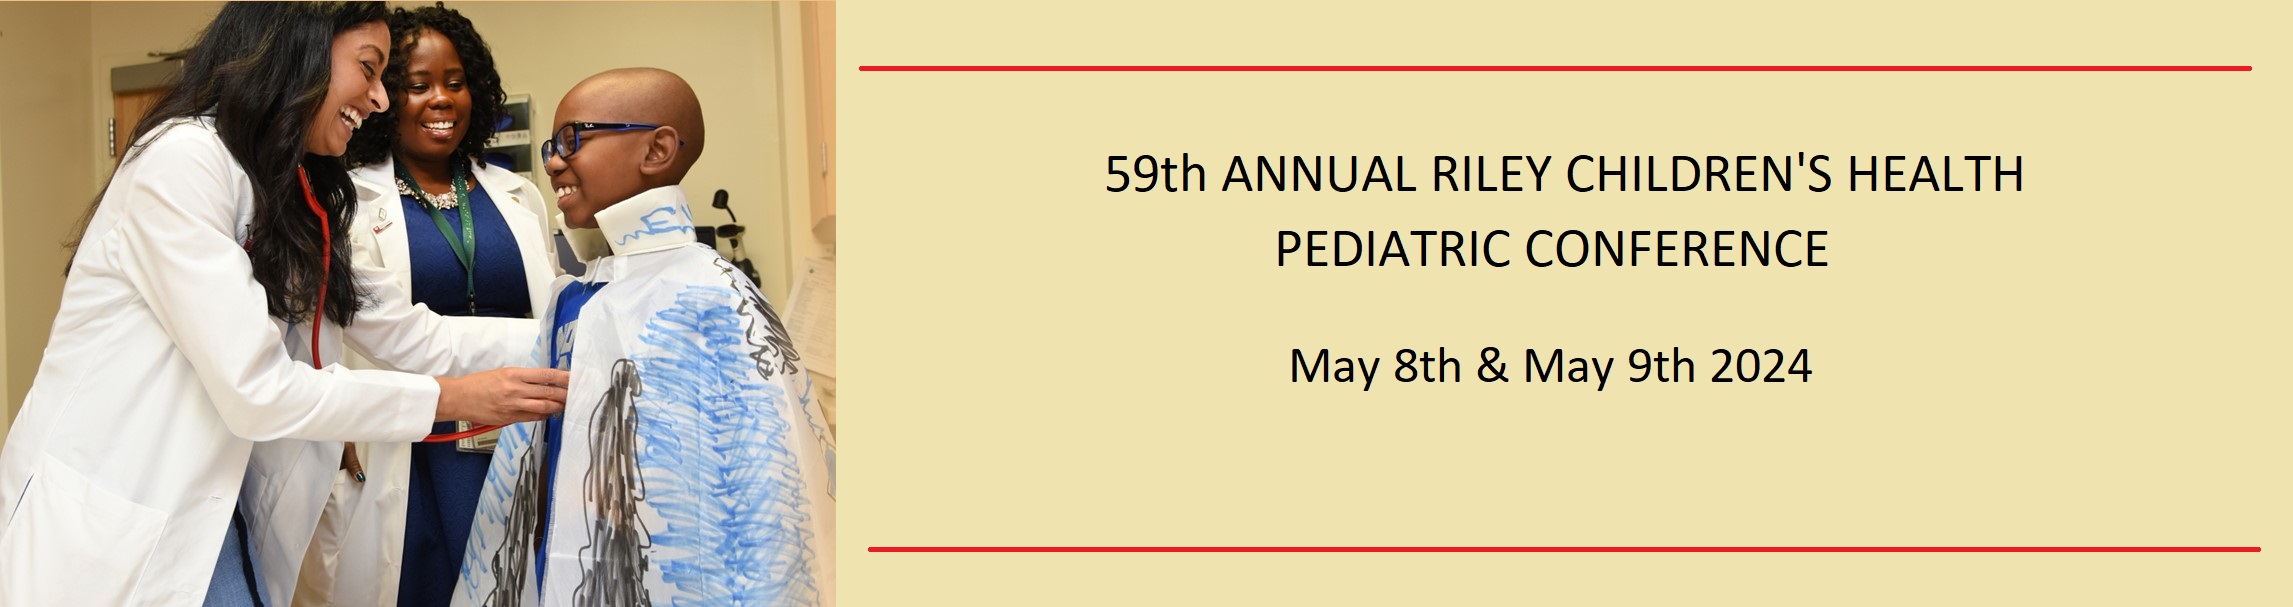 59th Annual Riley Children’s Health Pediatric Conference Banner